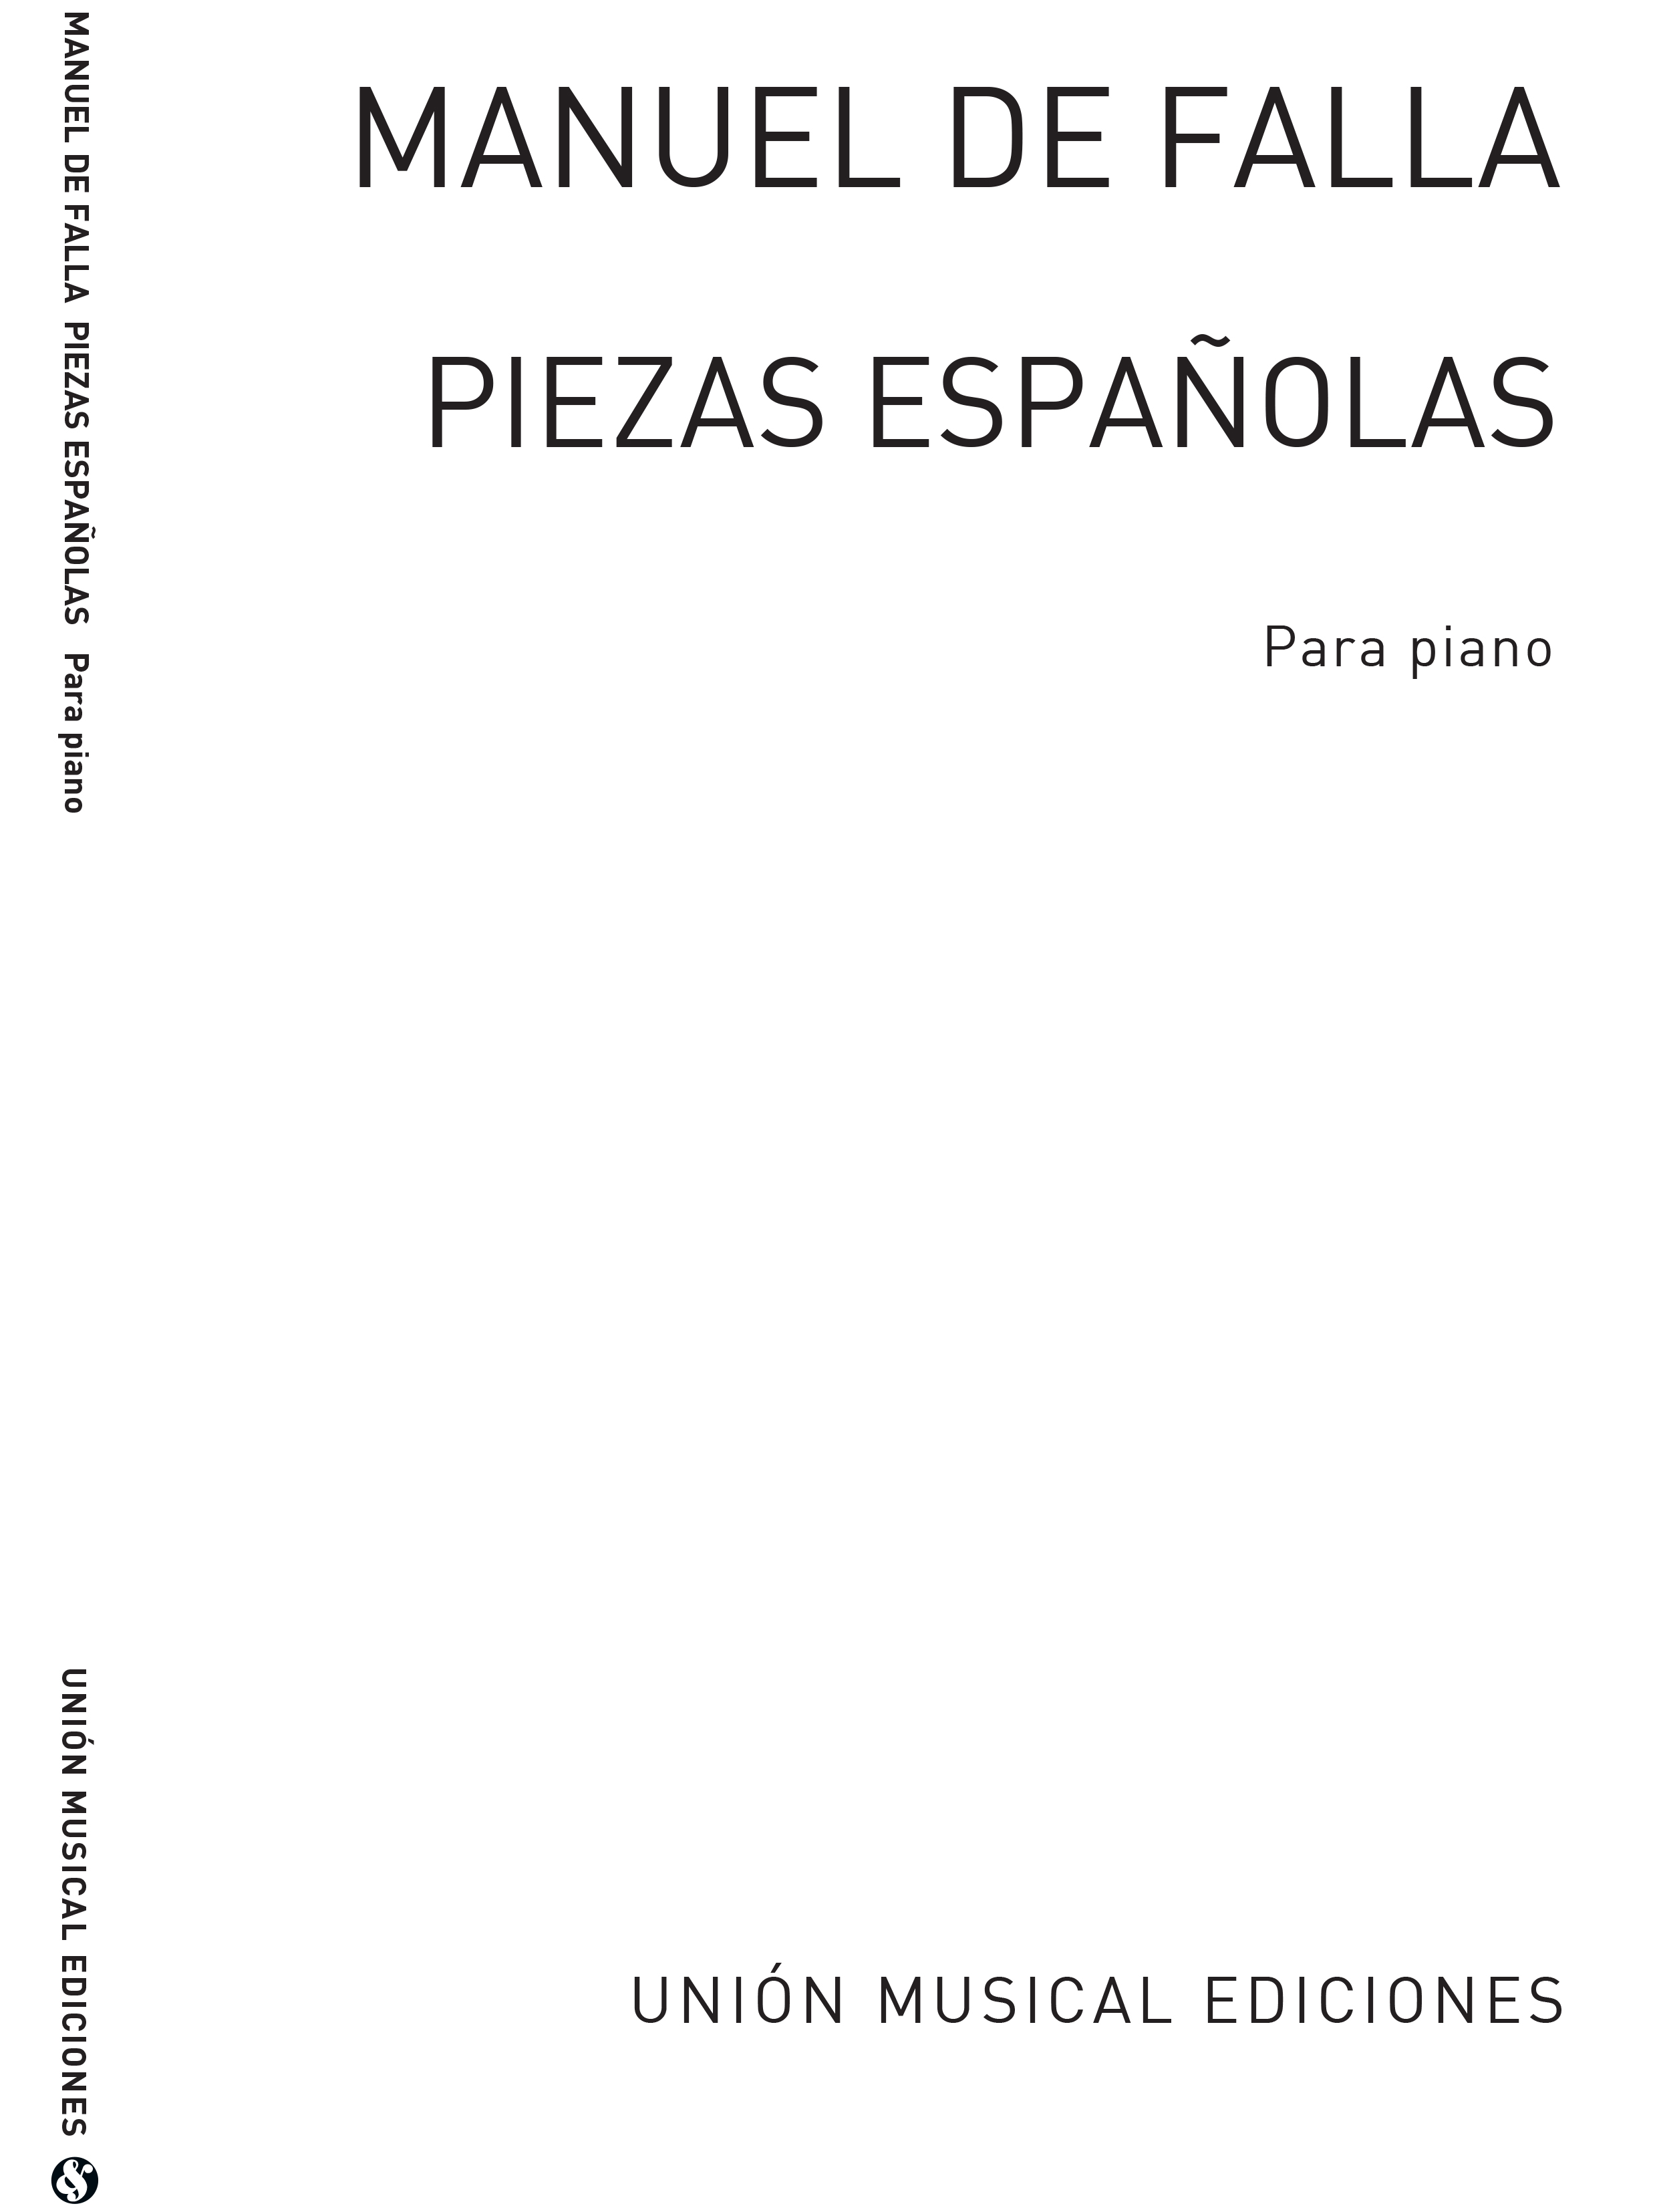 Manuel de Falla: Piezas Espanolas Piano: Piano: Instrumental Album